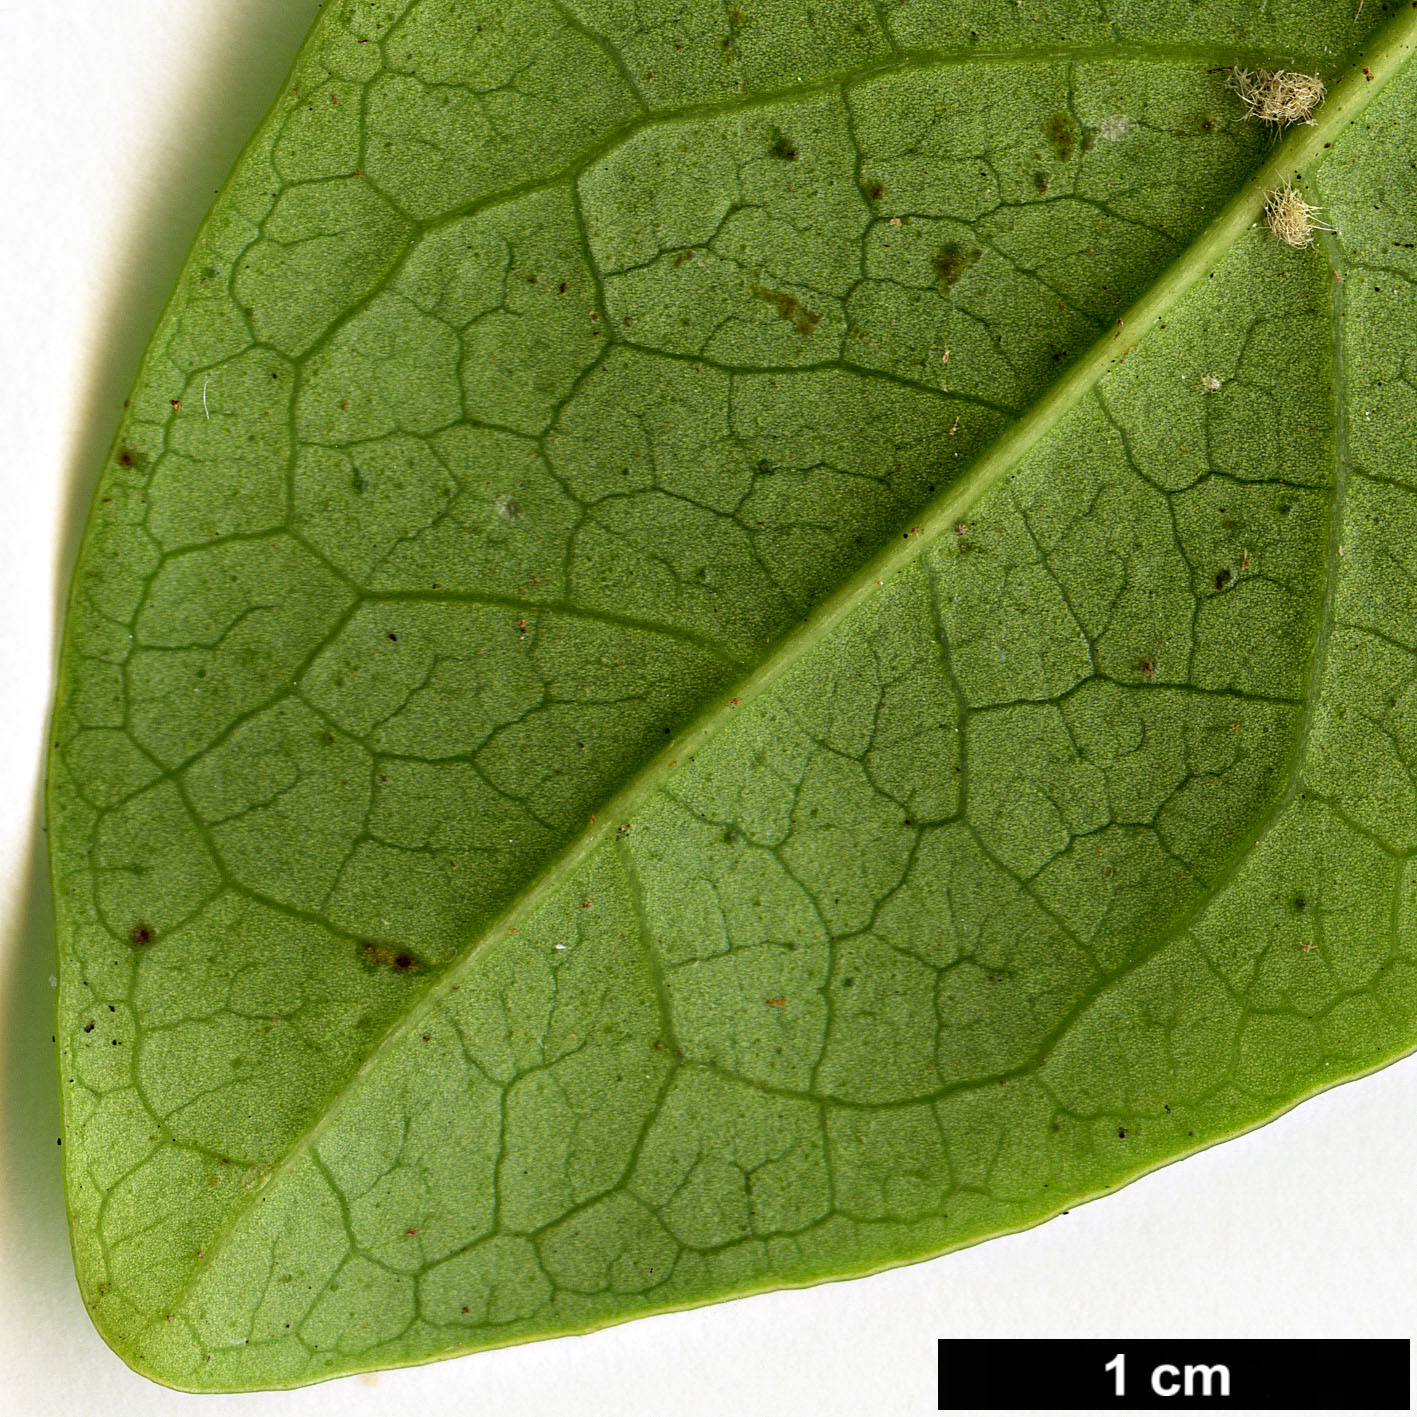 High resolution image: Family: Adoxaceae - Genus: Viburnum - Taxon: treleasei